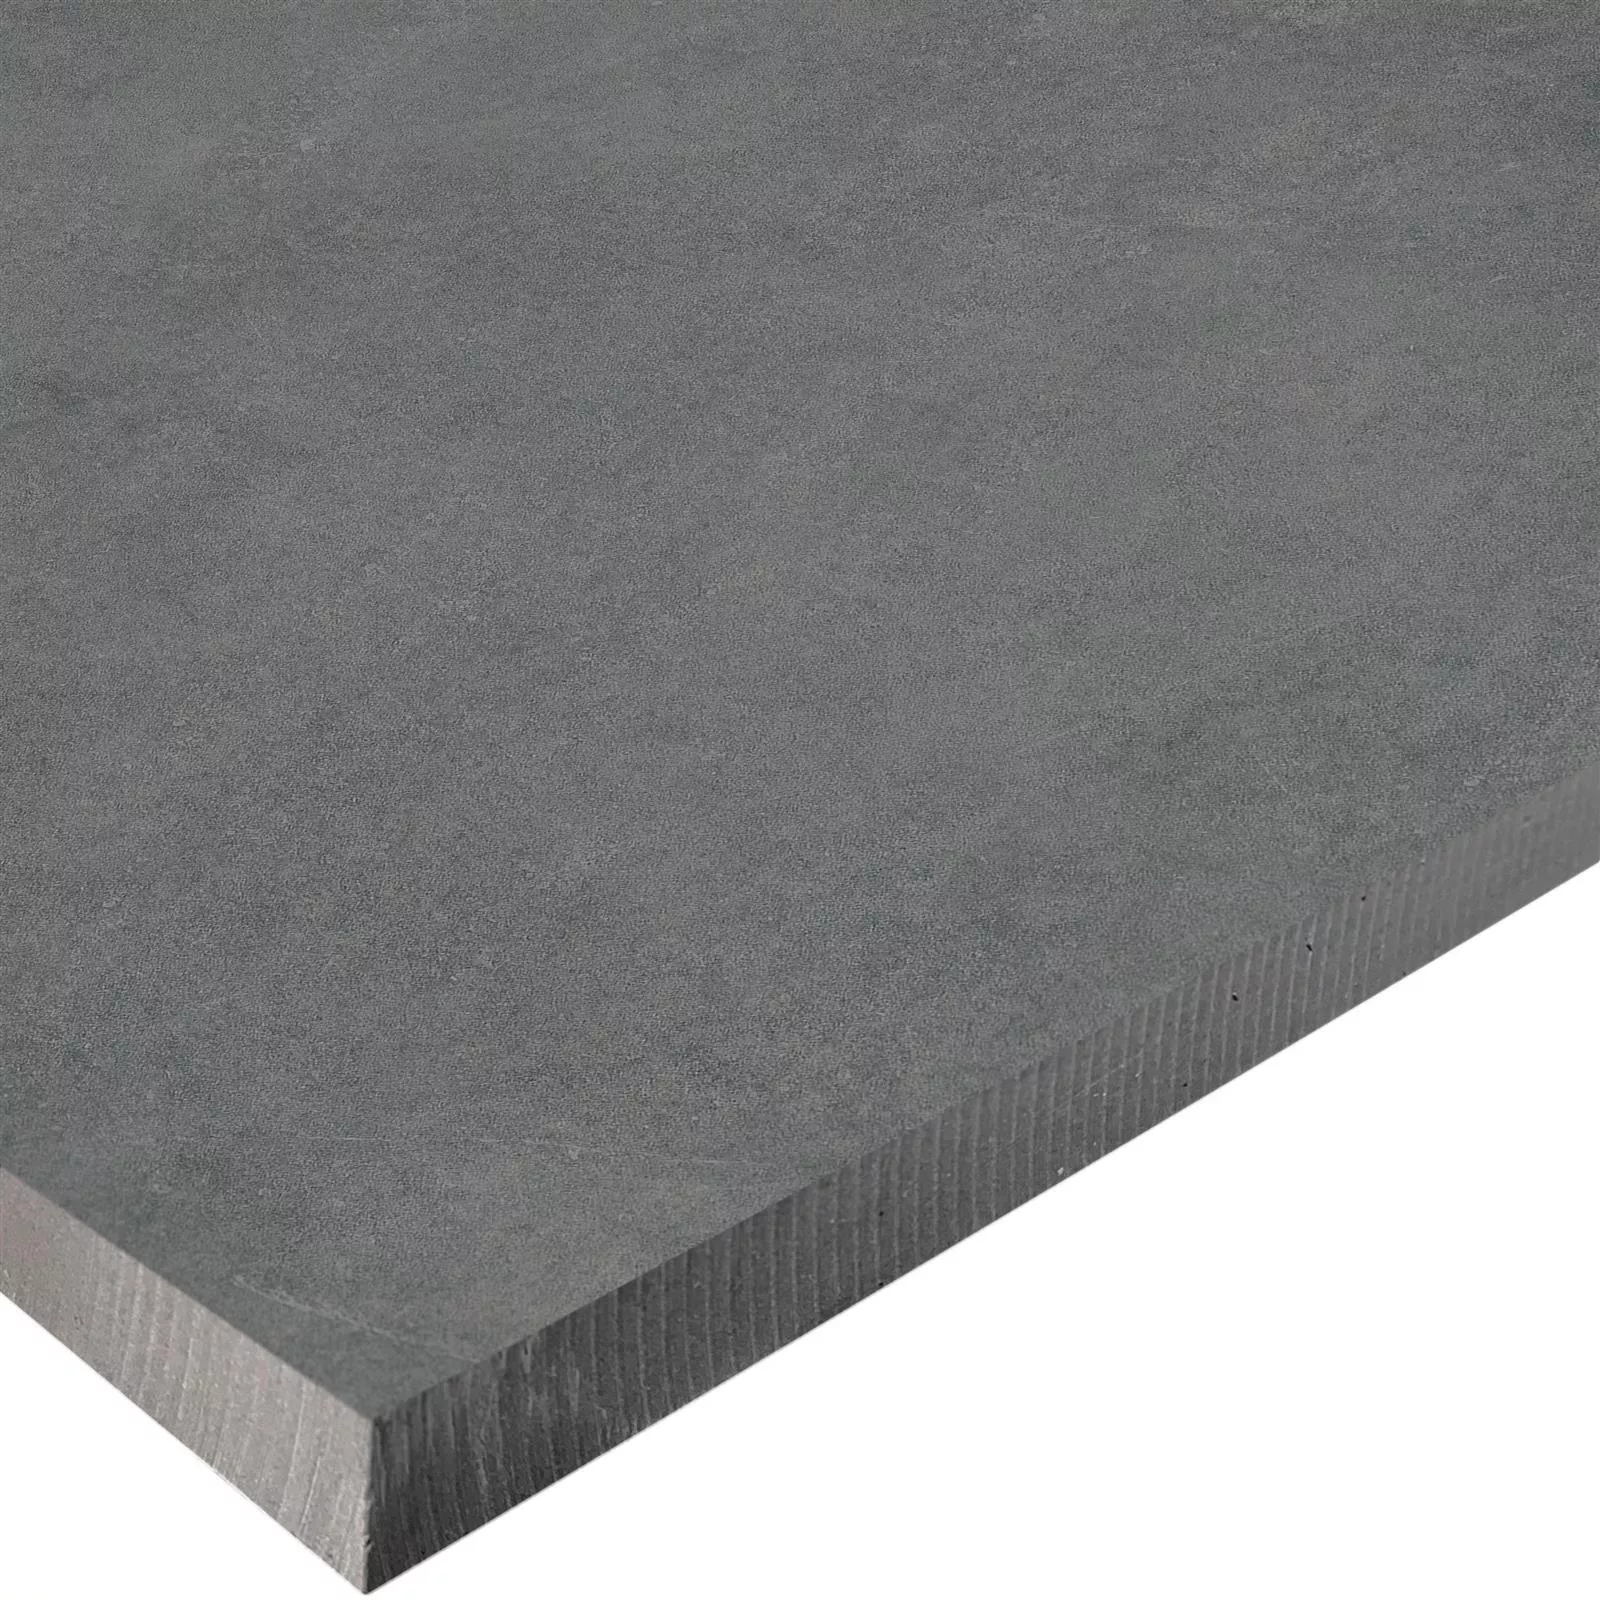 Terrassenplatten Zementoptik Newland Anthrazit 60x60x3cm